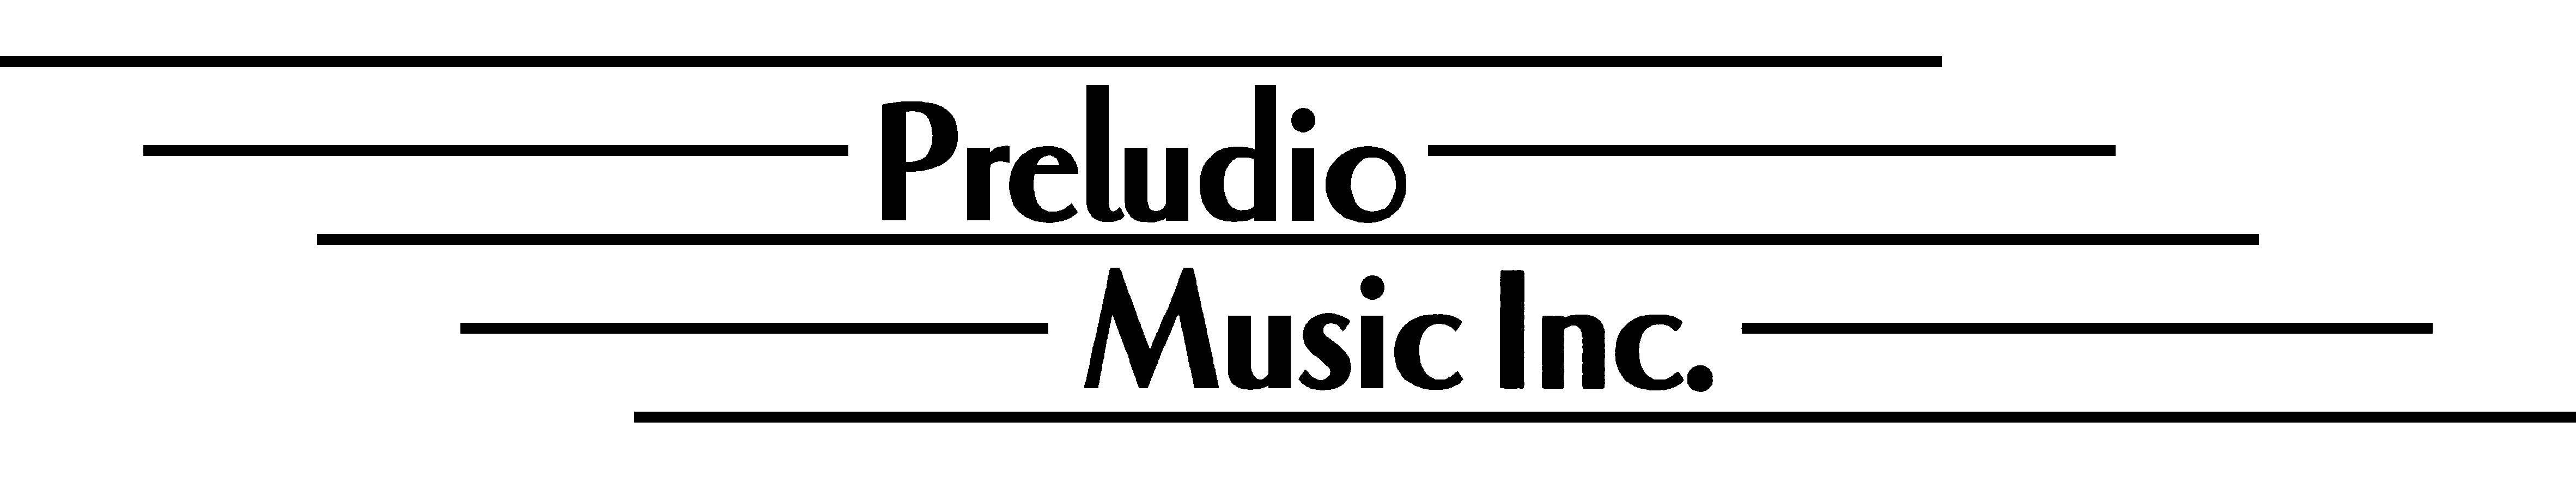 Preludio Music Inc.